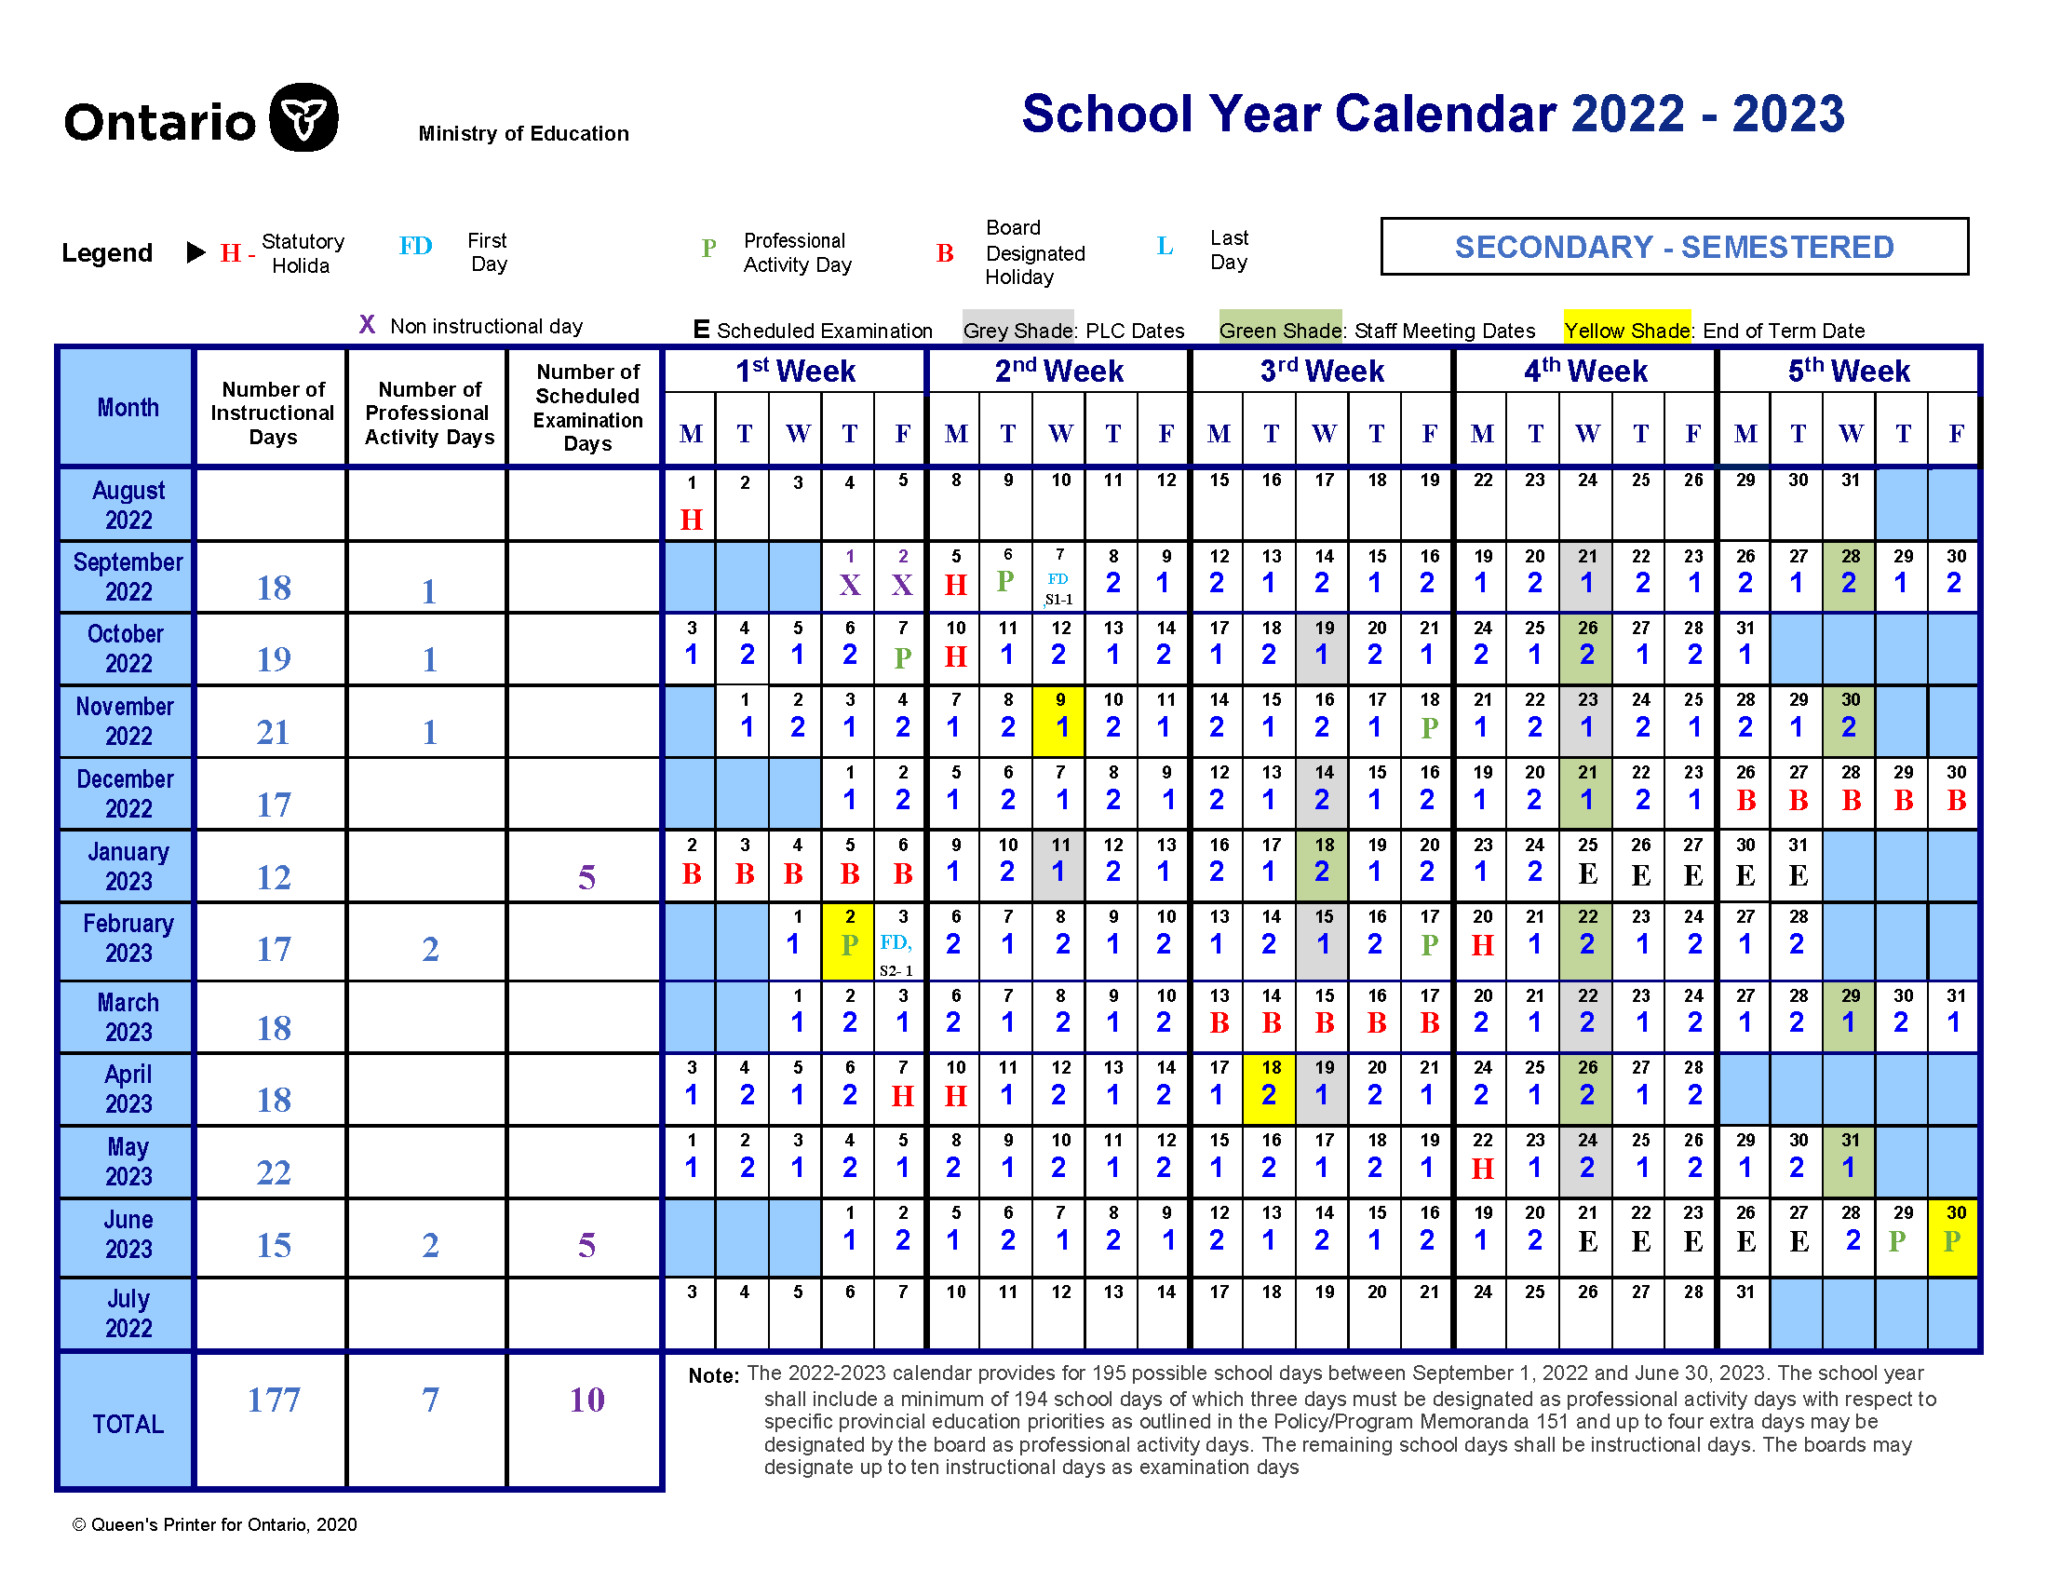 calendar-schedule-runnymede-collegiate-institute